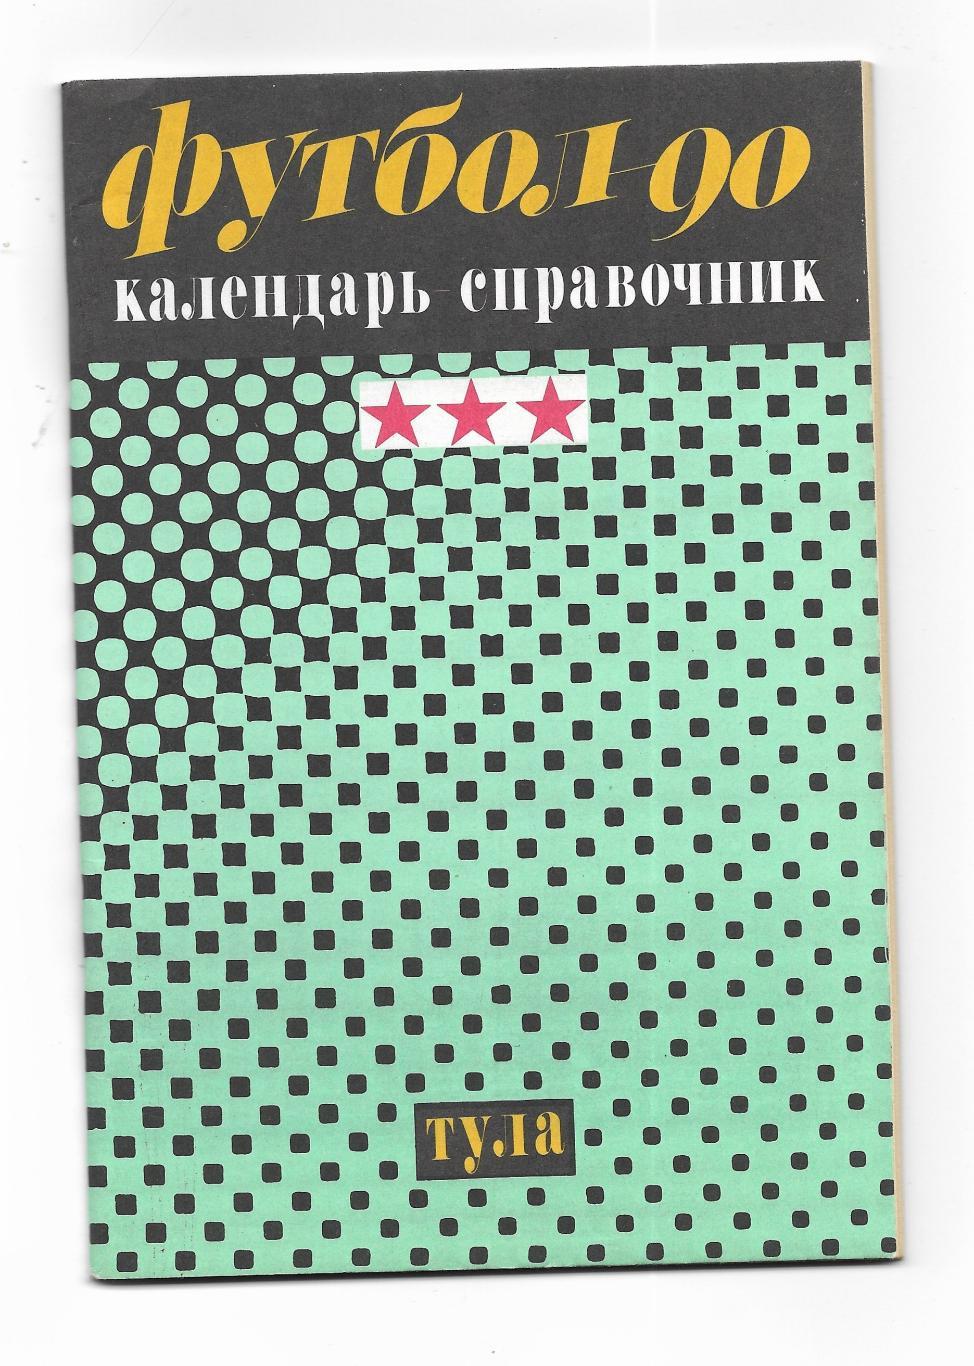 календарь_справочник_ФУТБОЛ. _Издан в Туле_1990